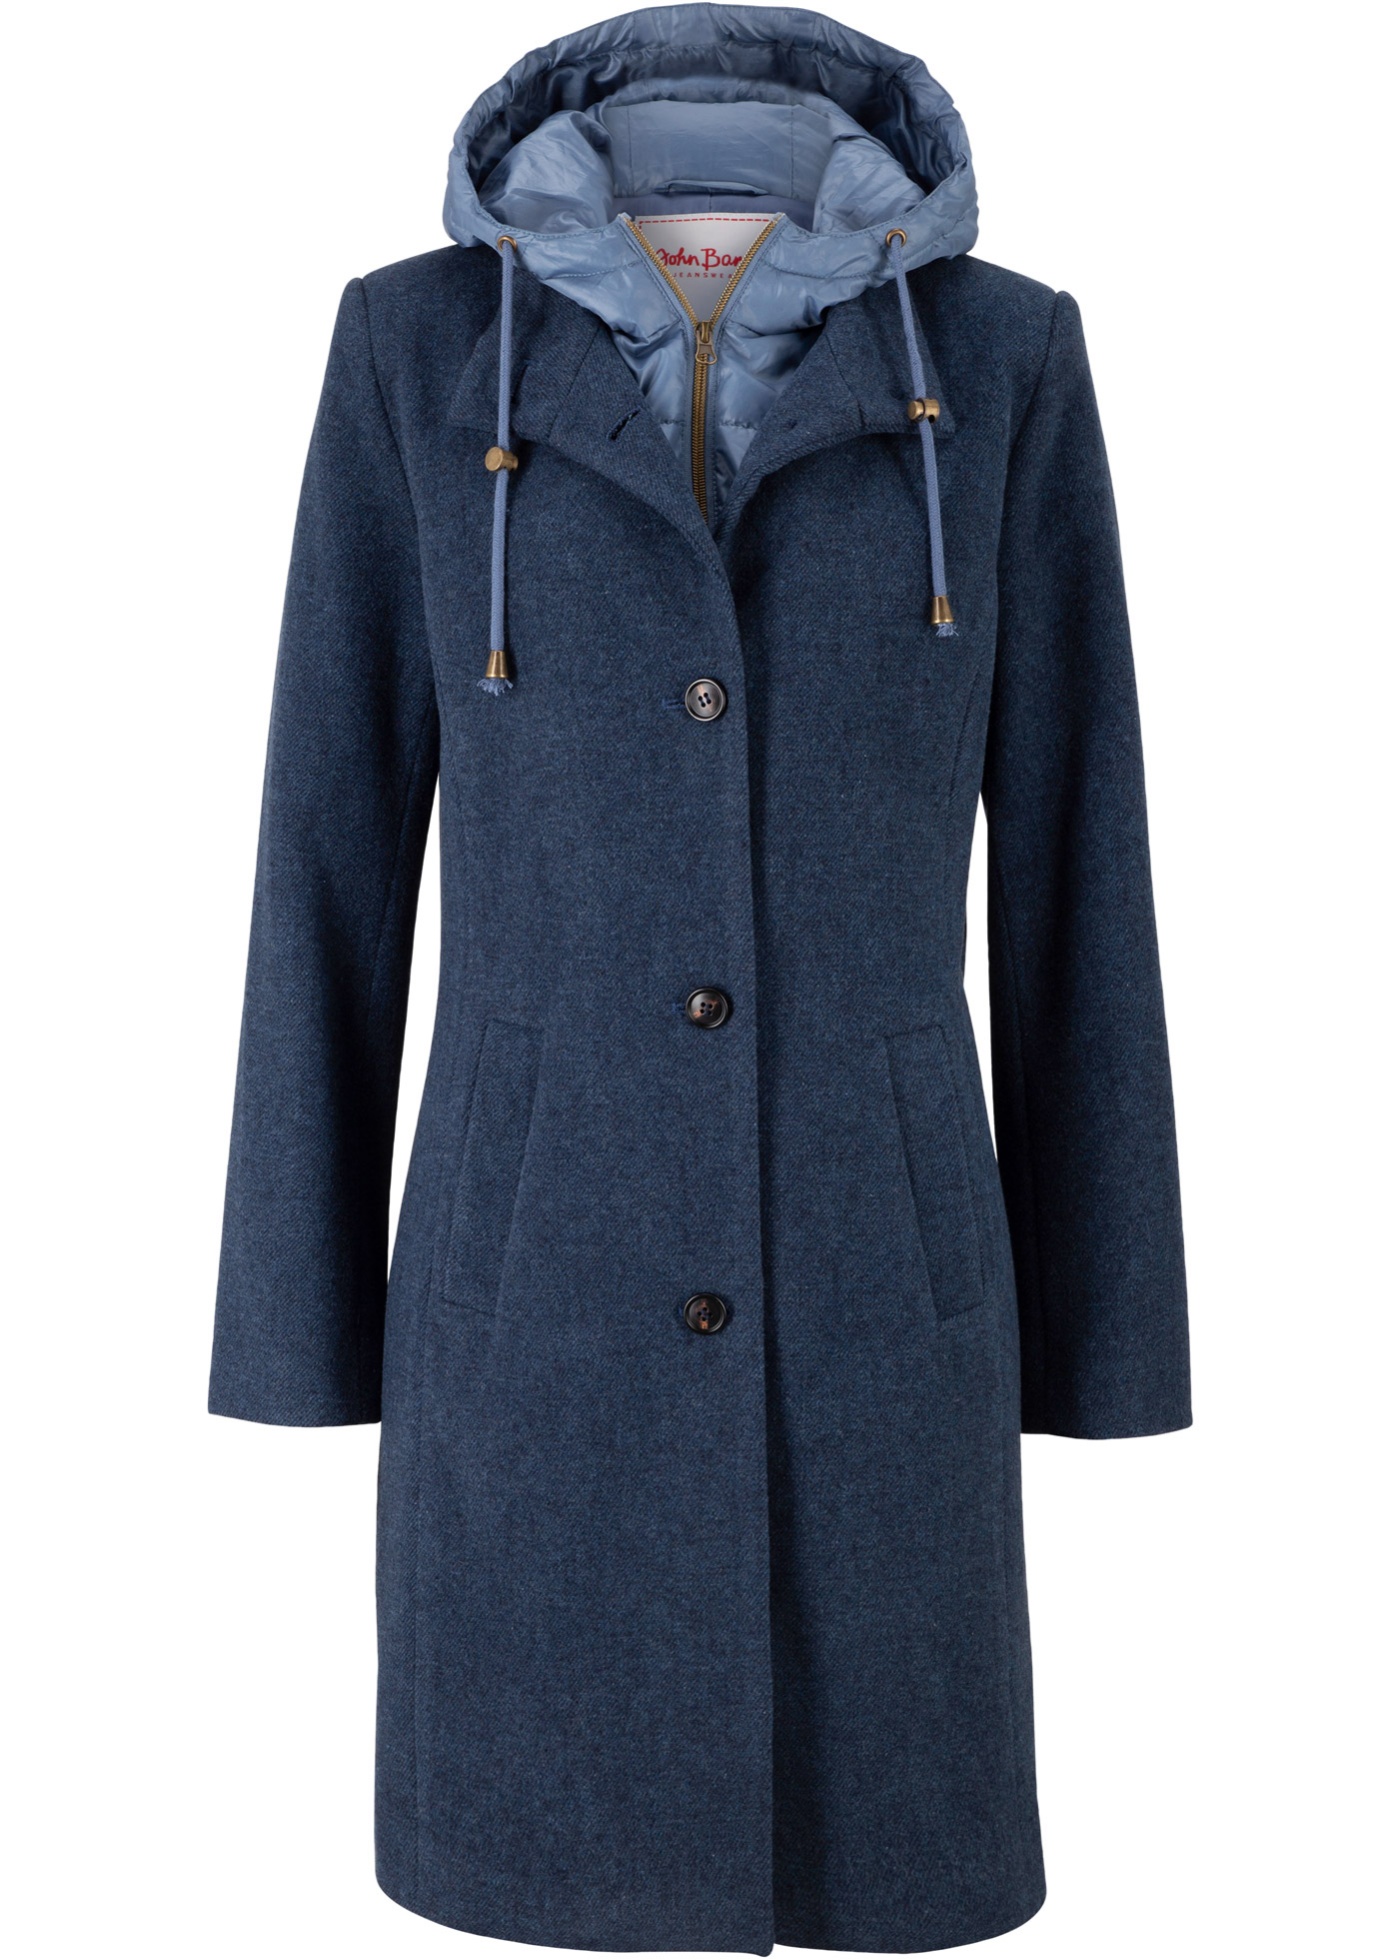 Manteau court d'hiver à teneur en laine, style 2 en 1